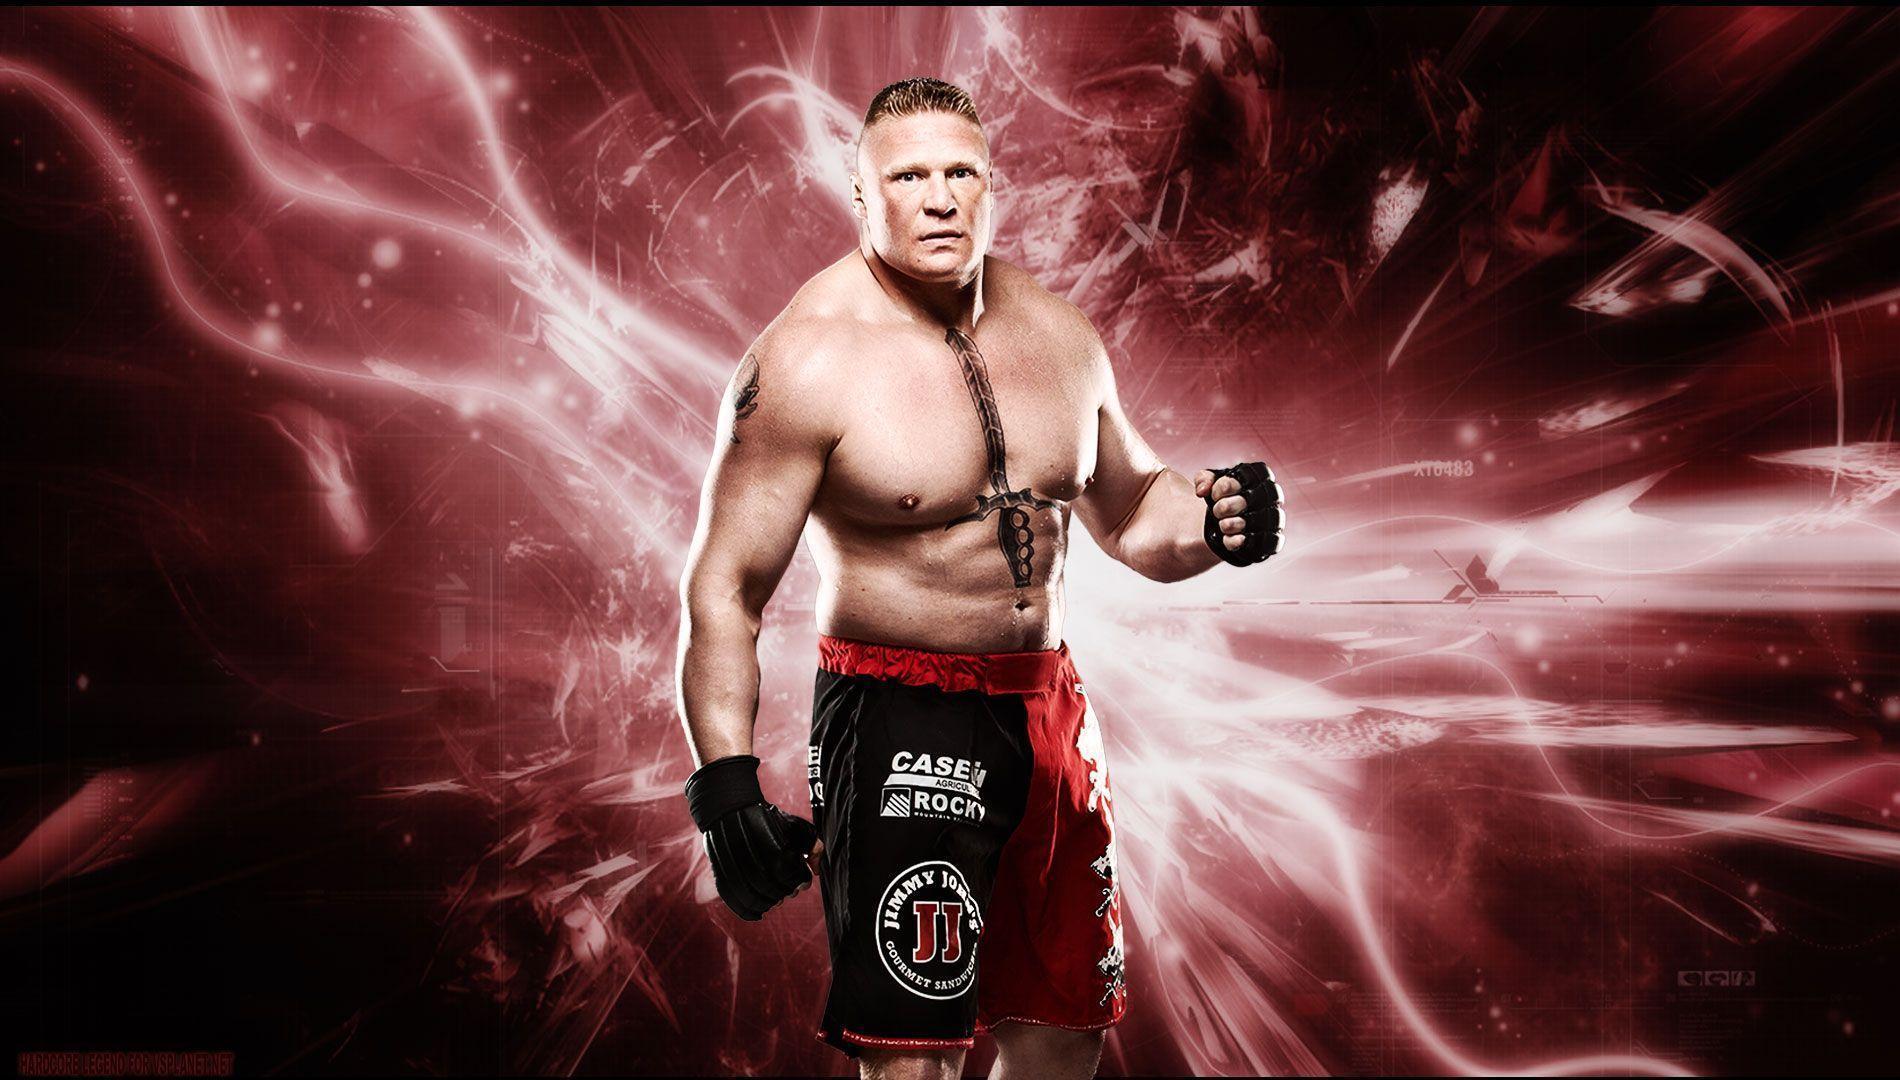 WWE Brock Lesnar 2015 Wallpapers - Wallpaper Cave